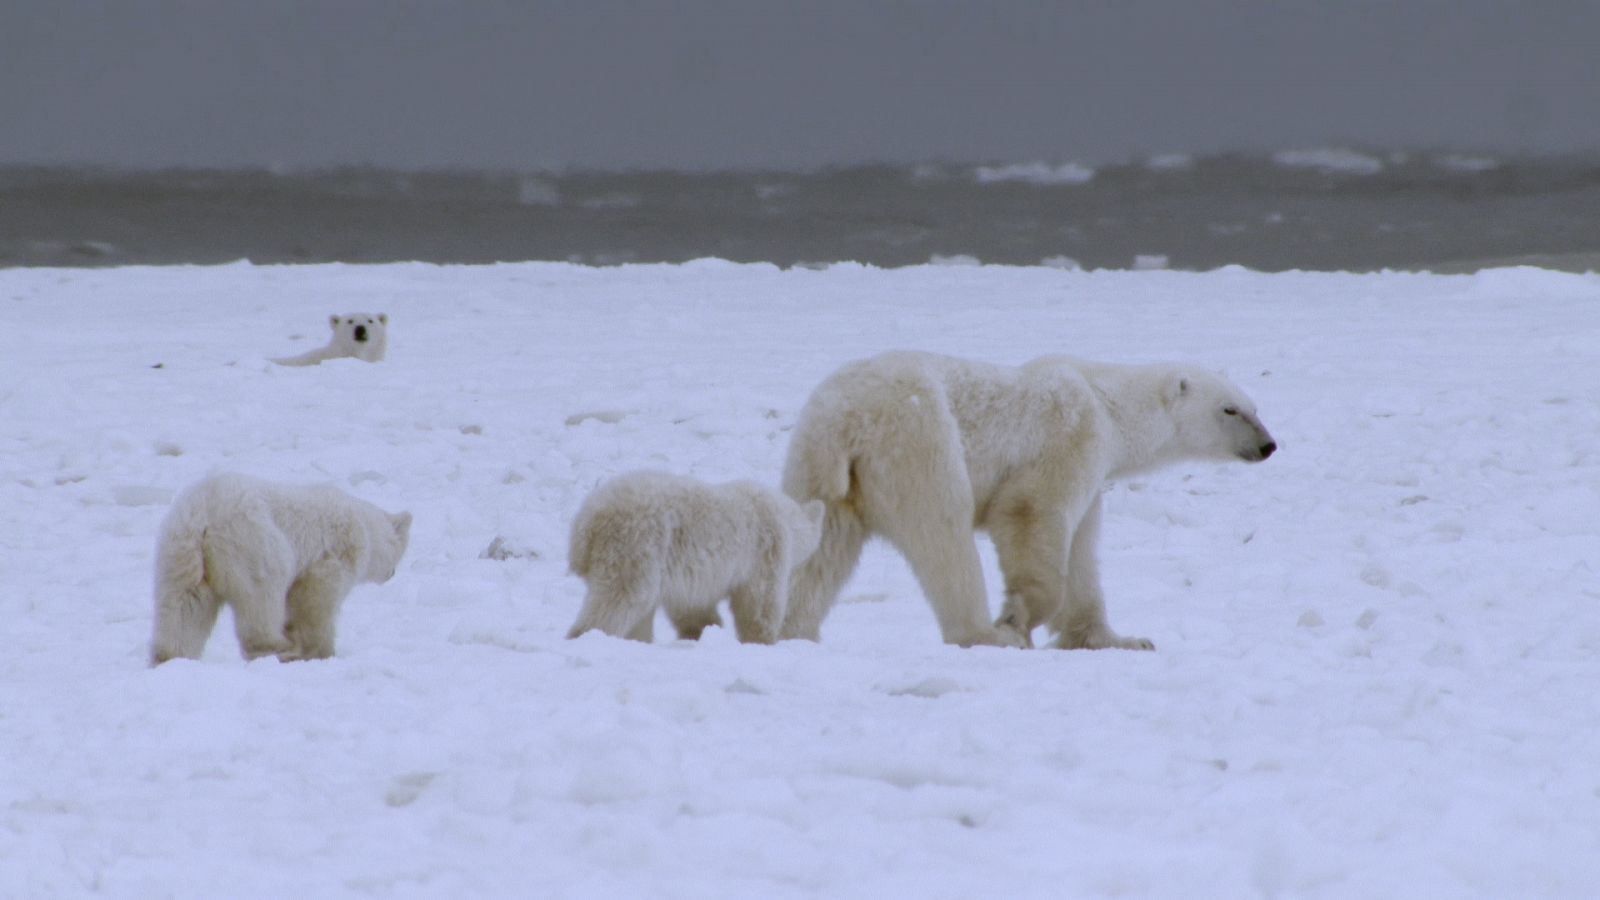 Somos documentales - El reino del oso polar